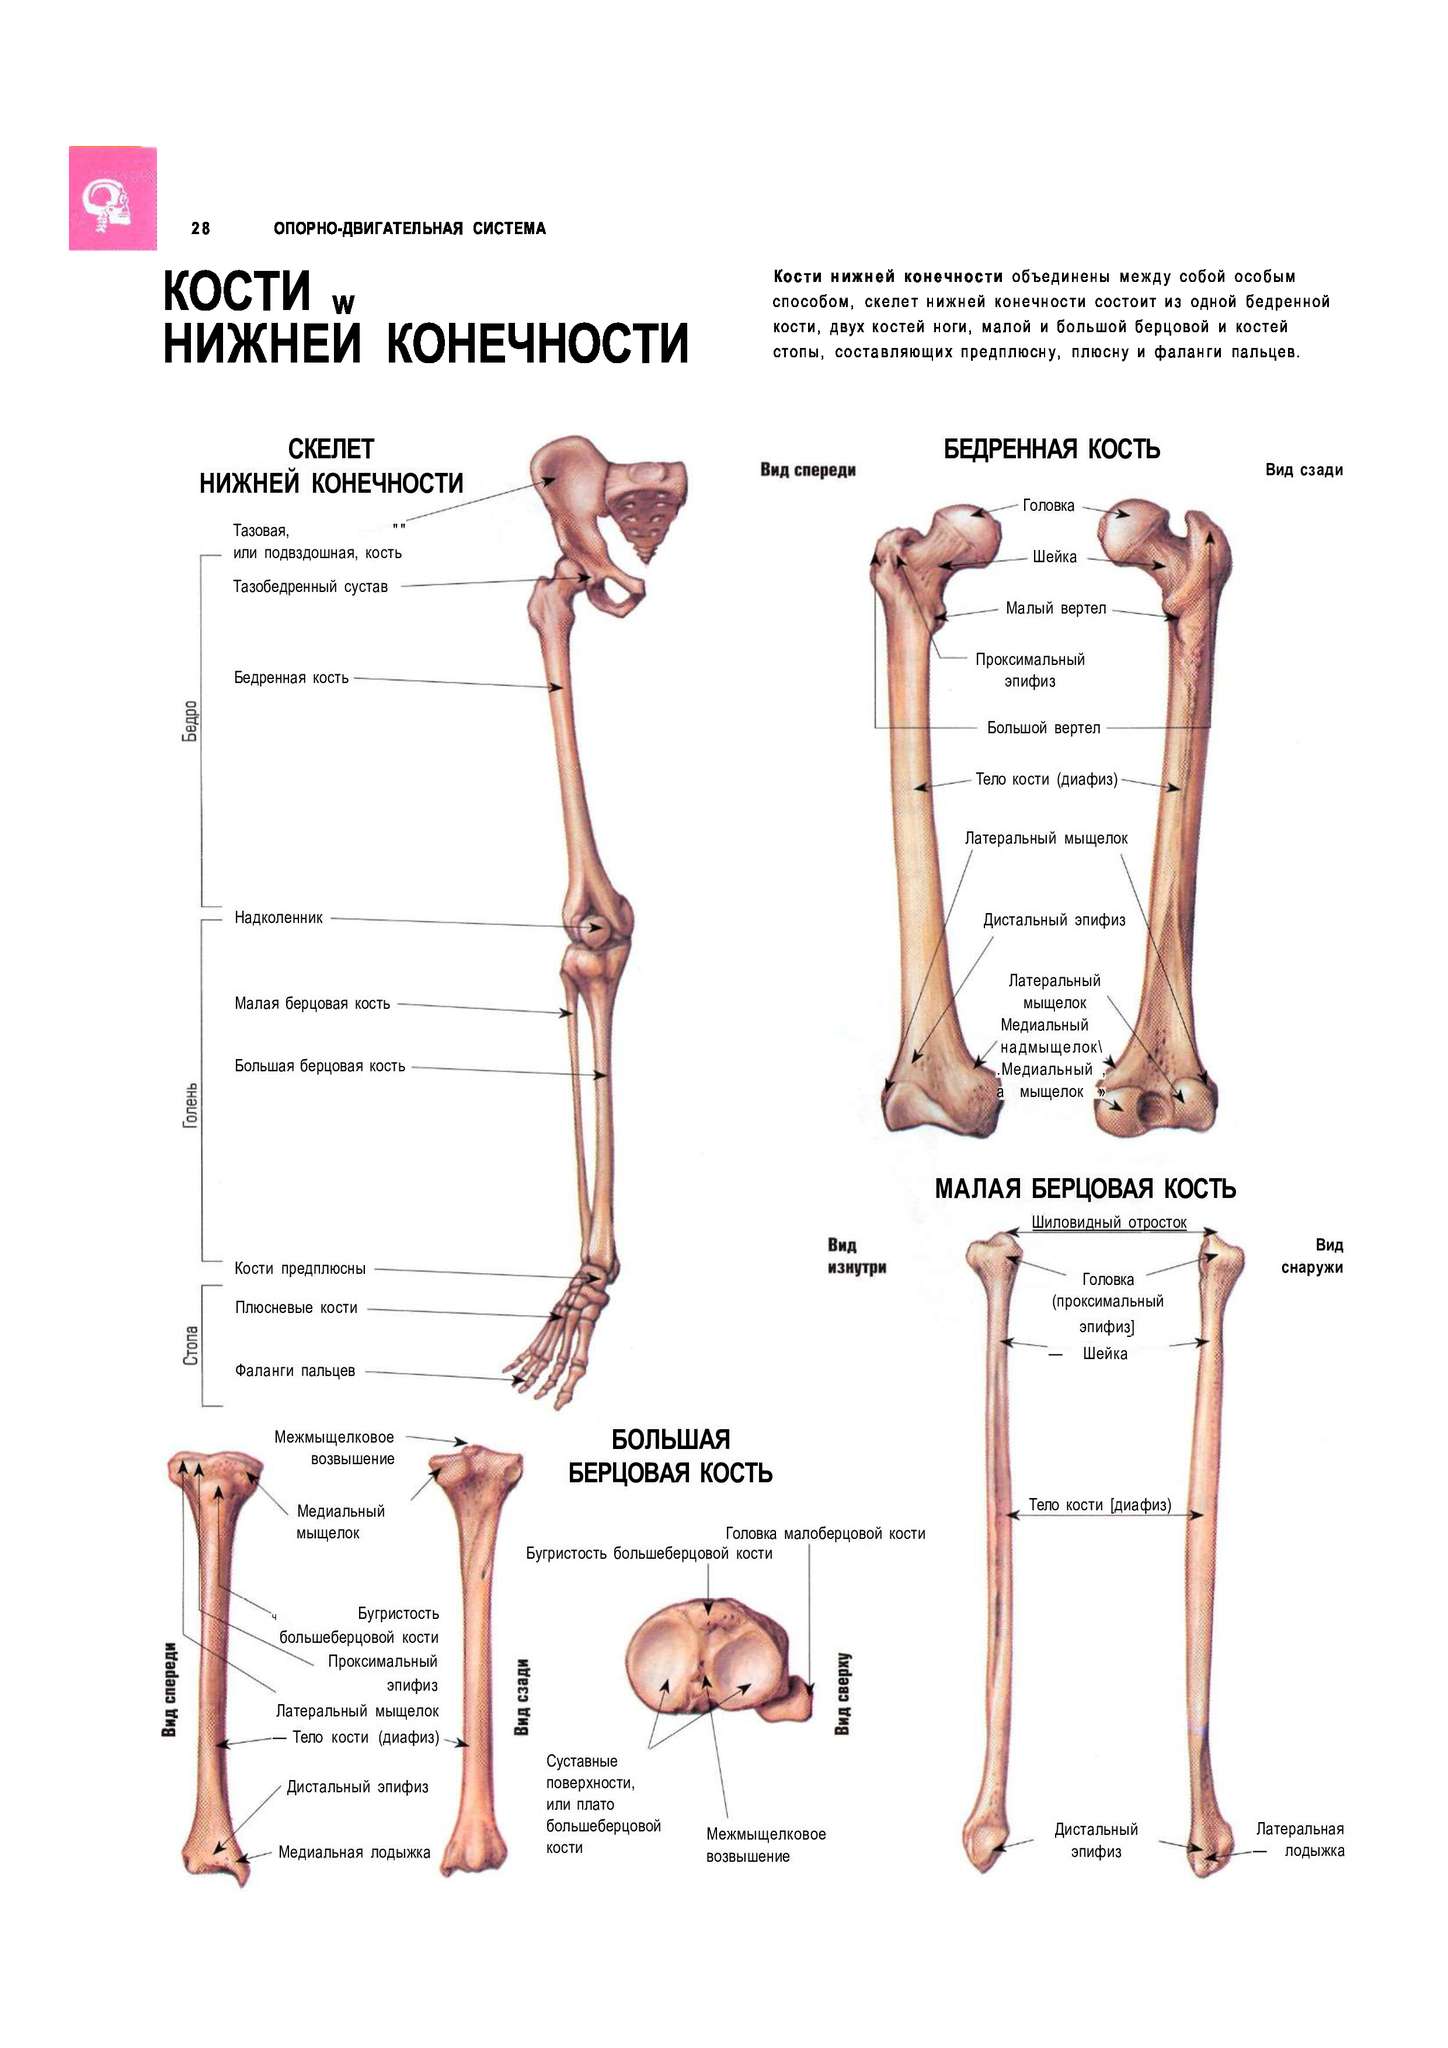 Анатомия нижней конечности человека. Кости нижних конечностей человека анатомия на латыни. Малая берцовая кость нижней конечности. Строение костей нижней конечности. Скелет нижней конечности на латинском.